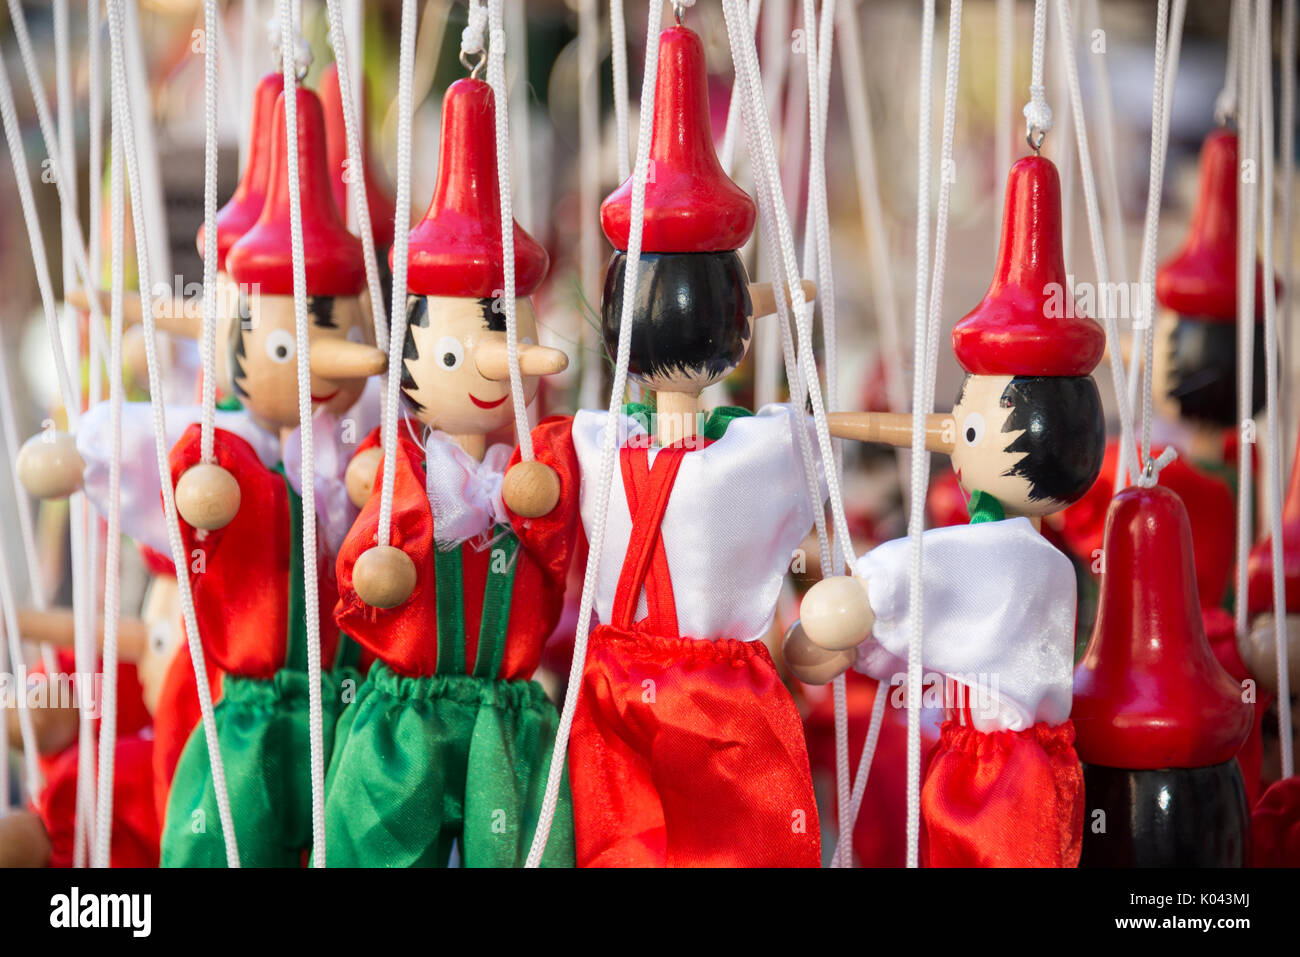 Traditionelle lackiert Rot und Grün Holz- Pinocchio marionette Puppen, Italien Stockfoto